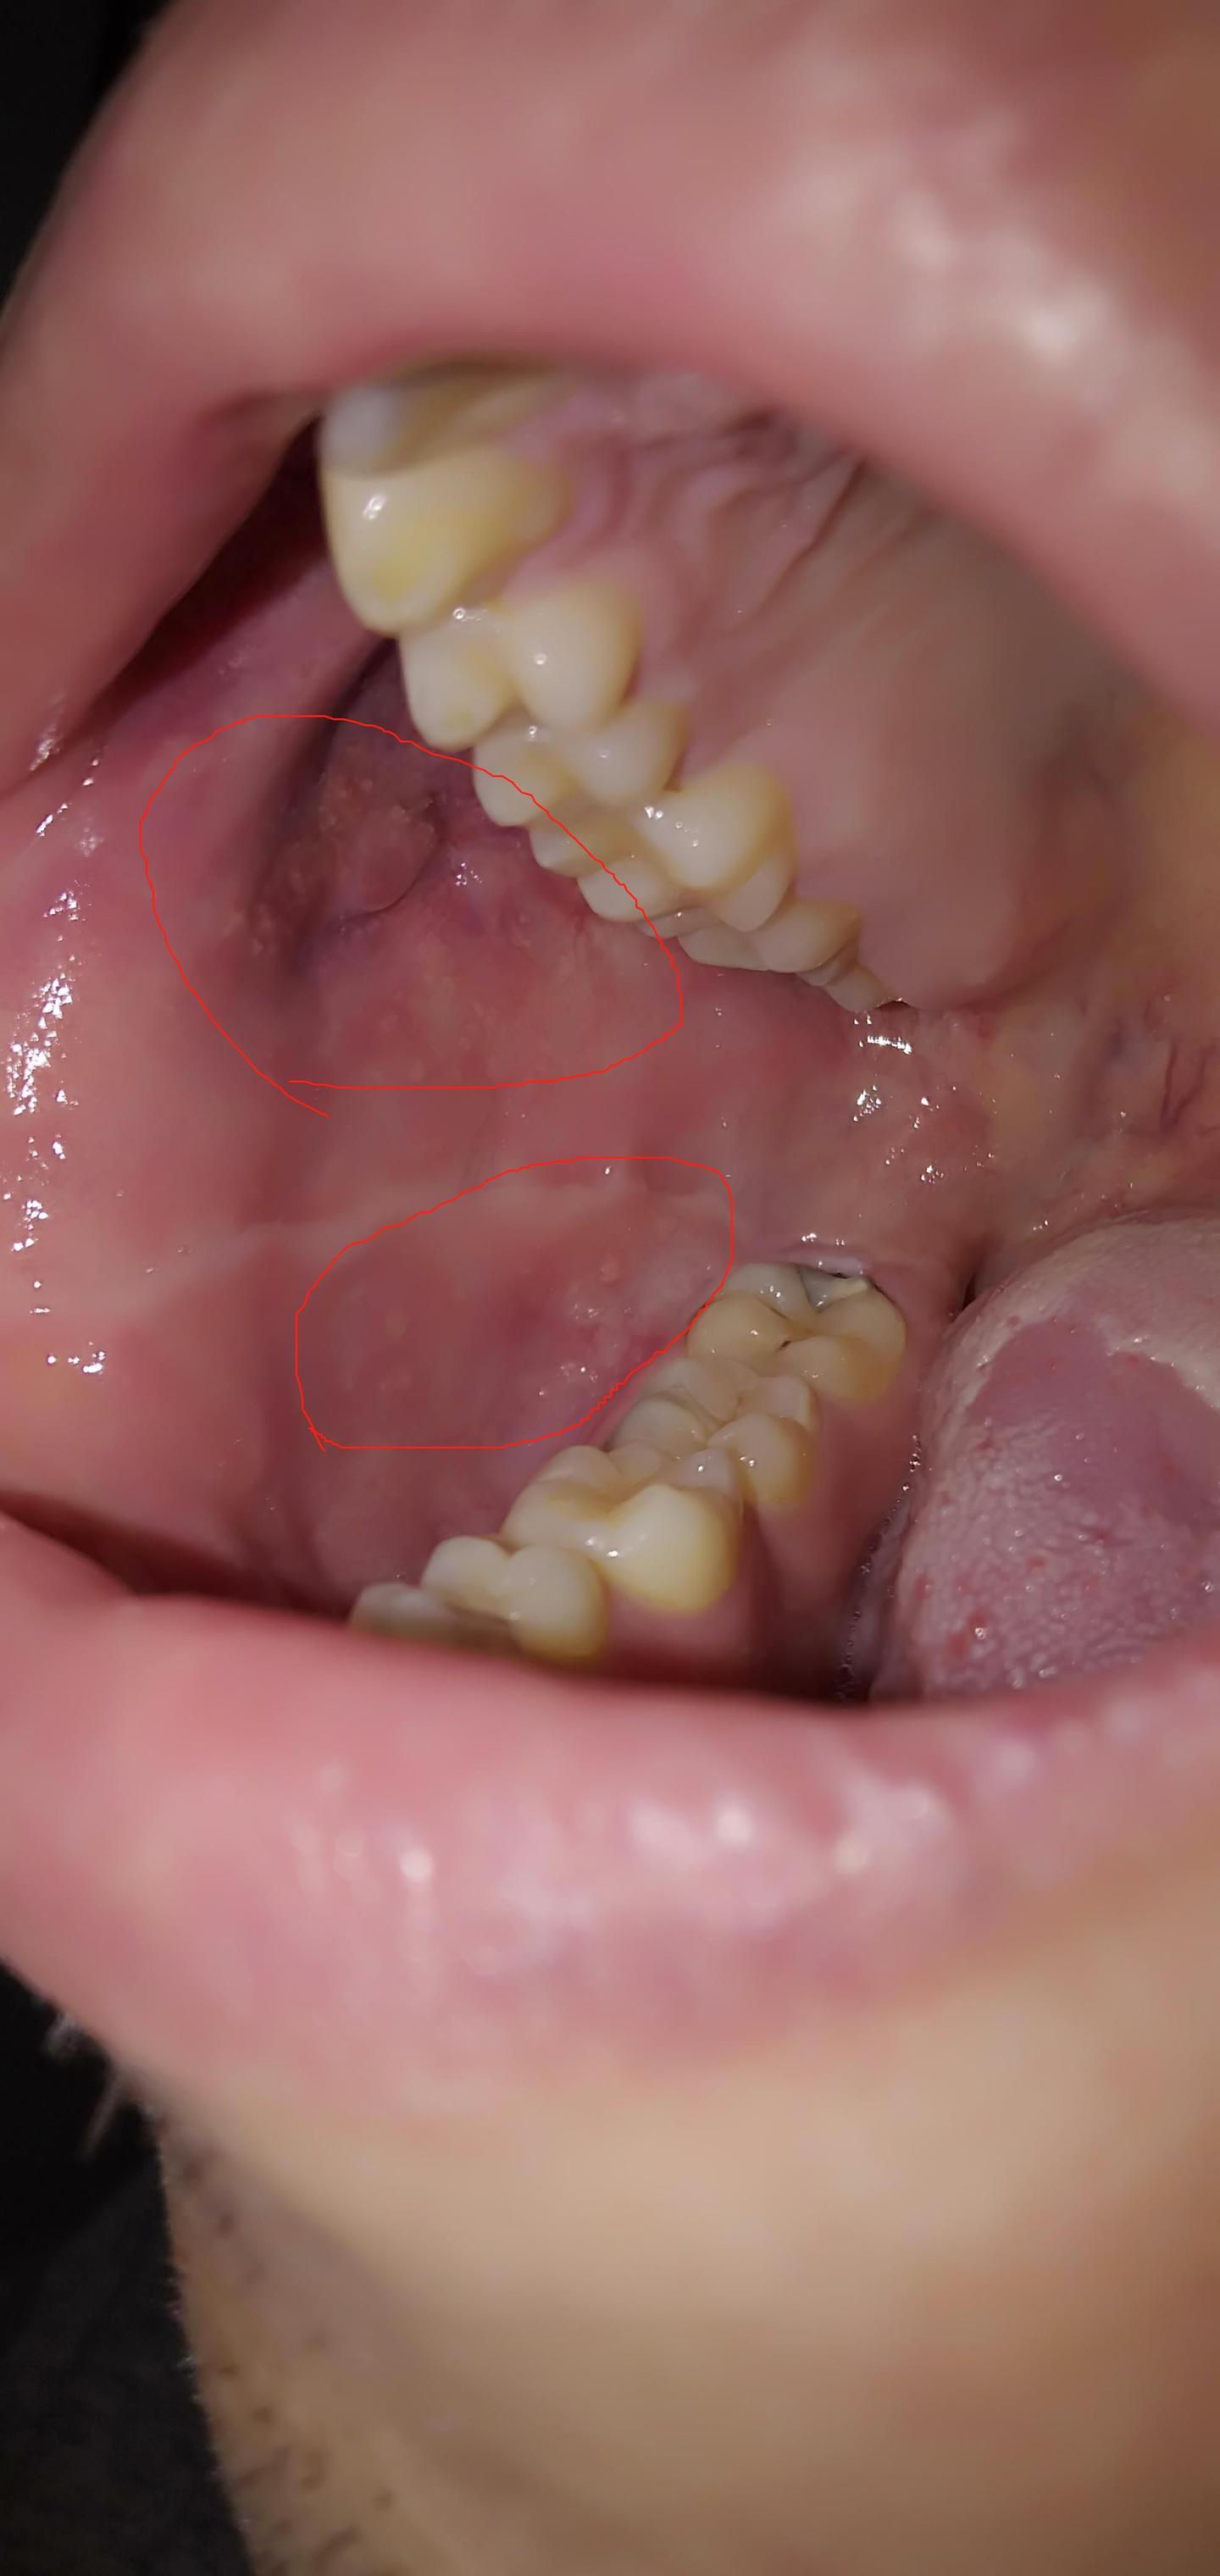 嘴巴口腔内壁两侧有一些小颗粒,请问这是什么原因!